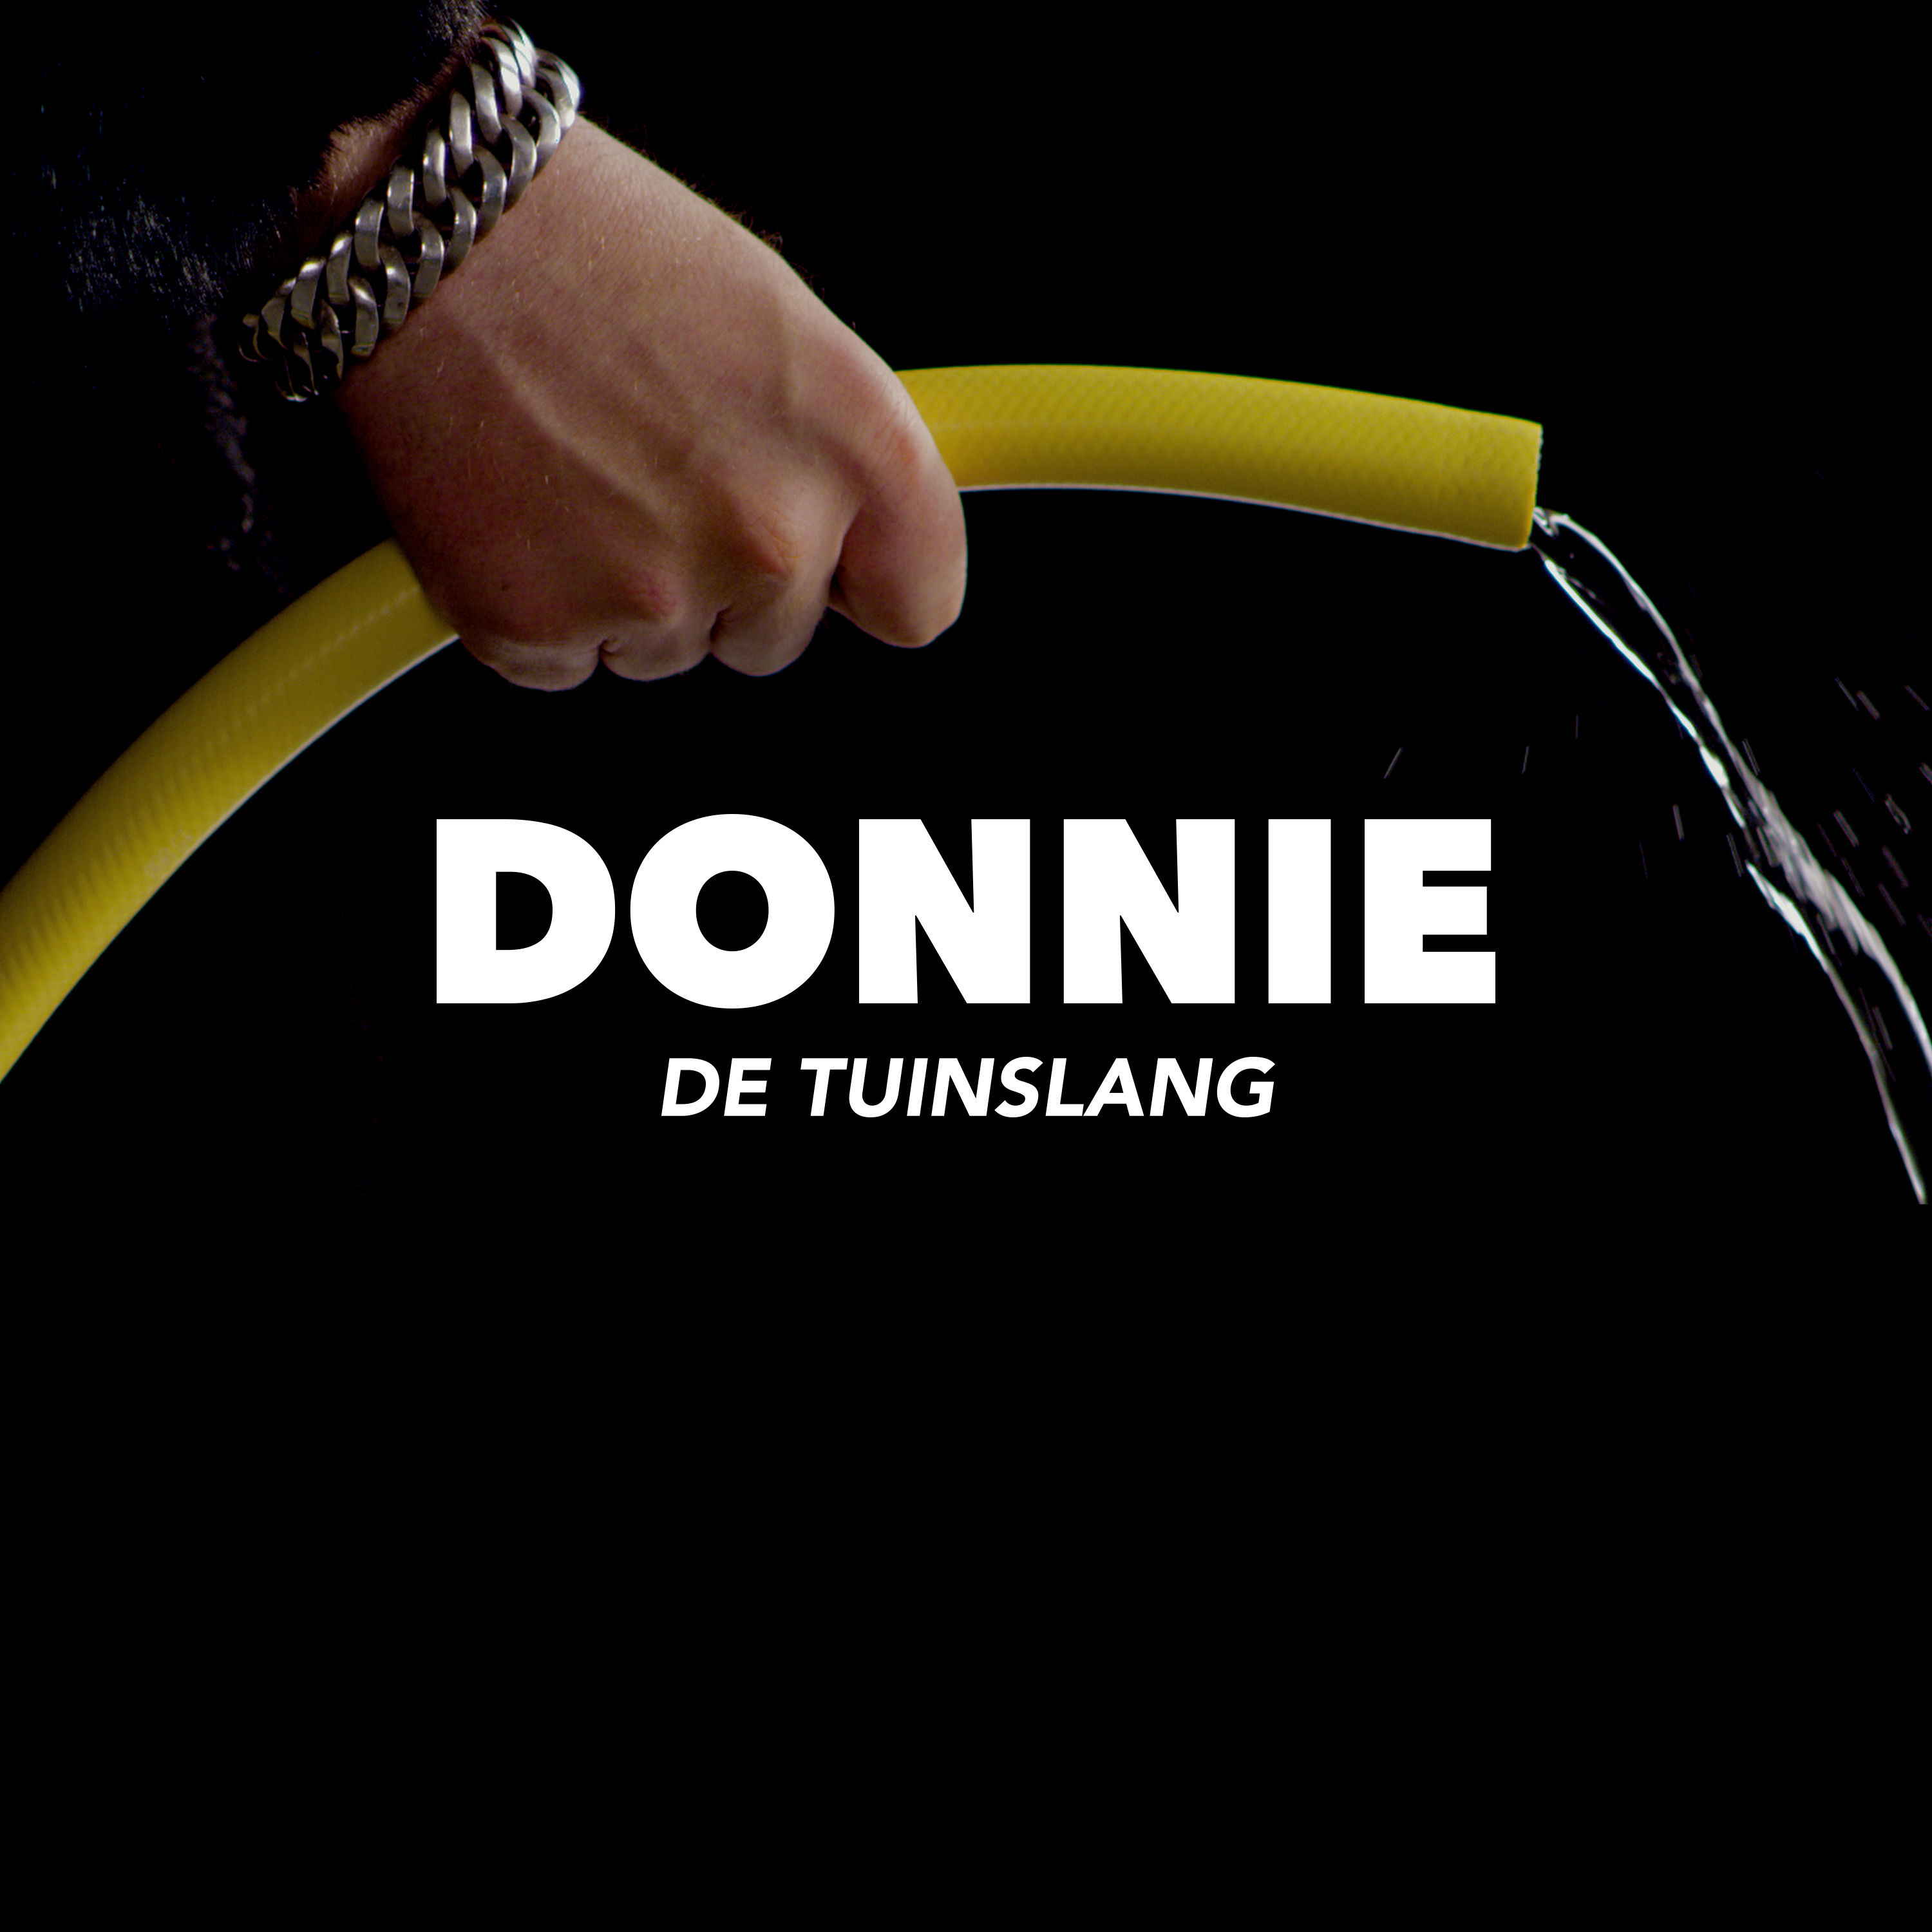 donnie-holding-hose_title_alt